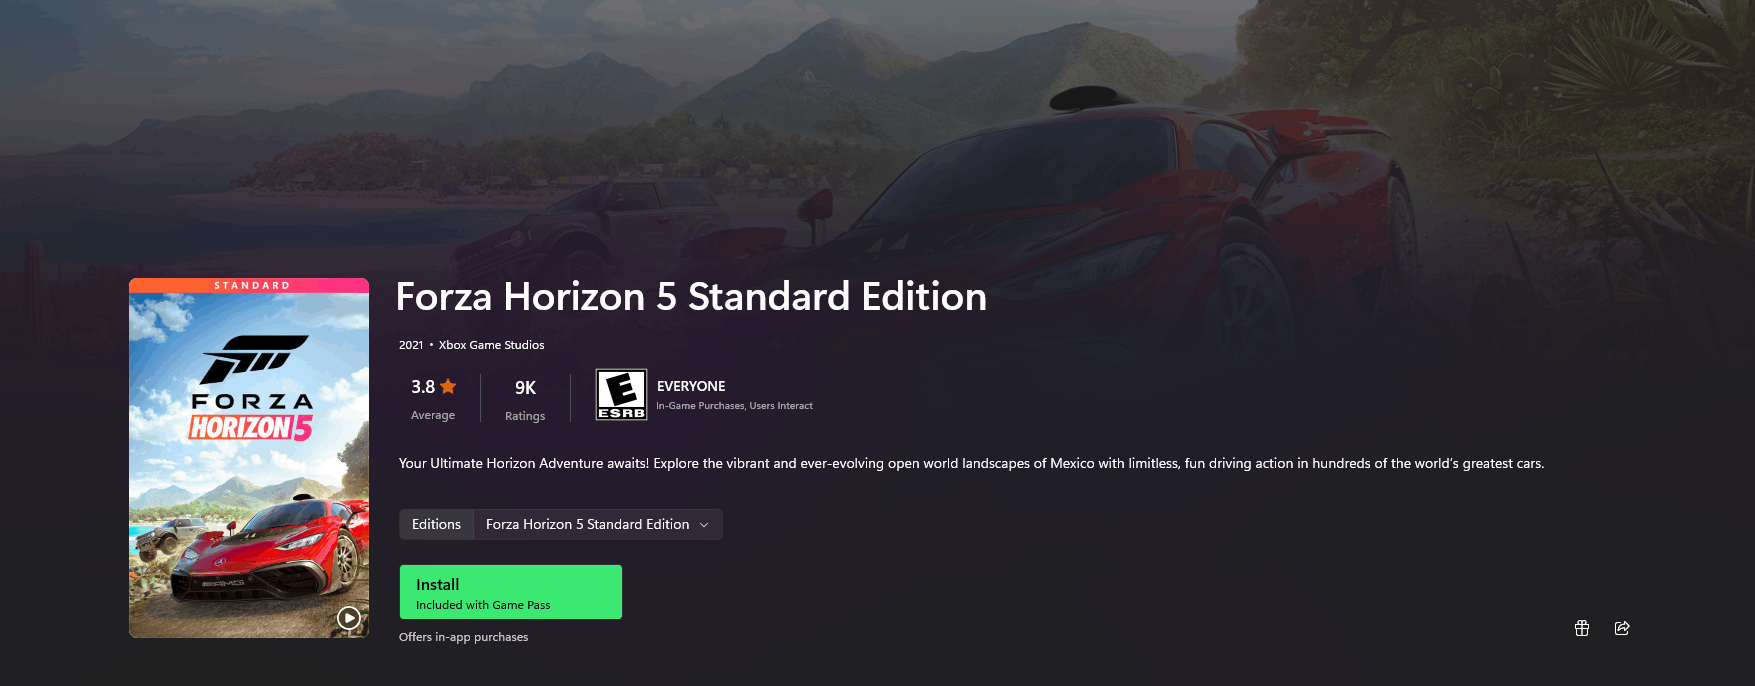 Buy FORZA HORIZON 4 STANDARD EDITION Xbox One / PC Xbox Key 